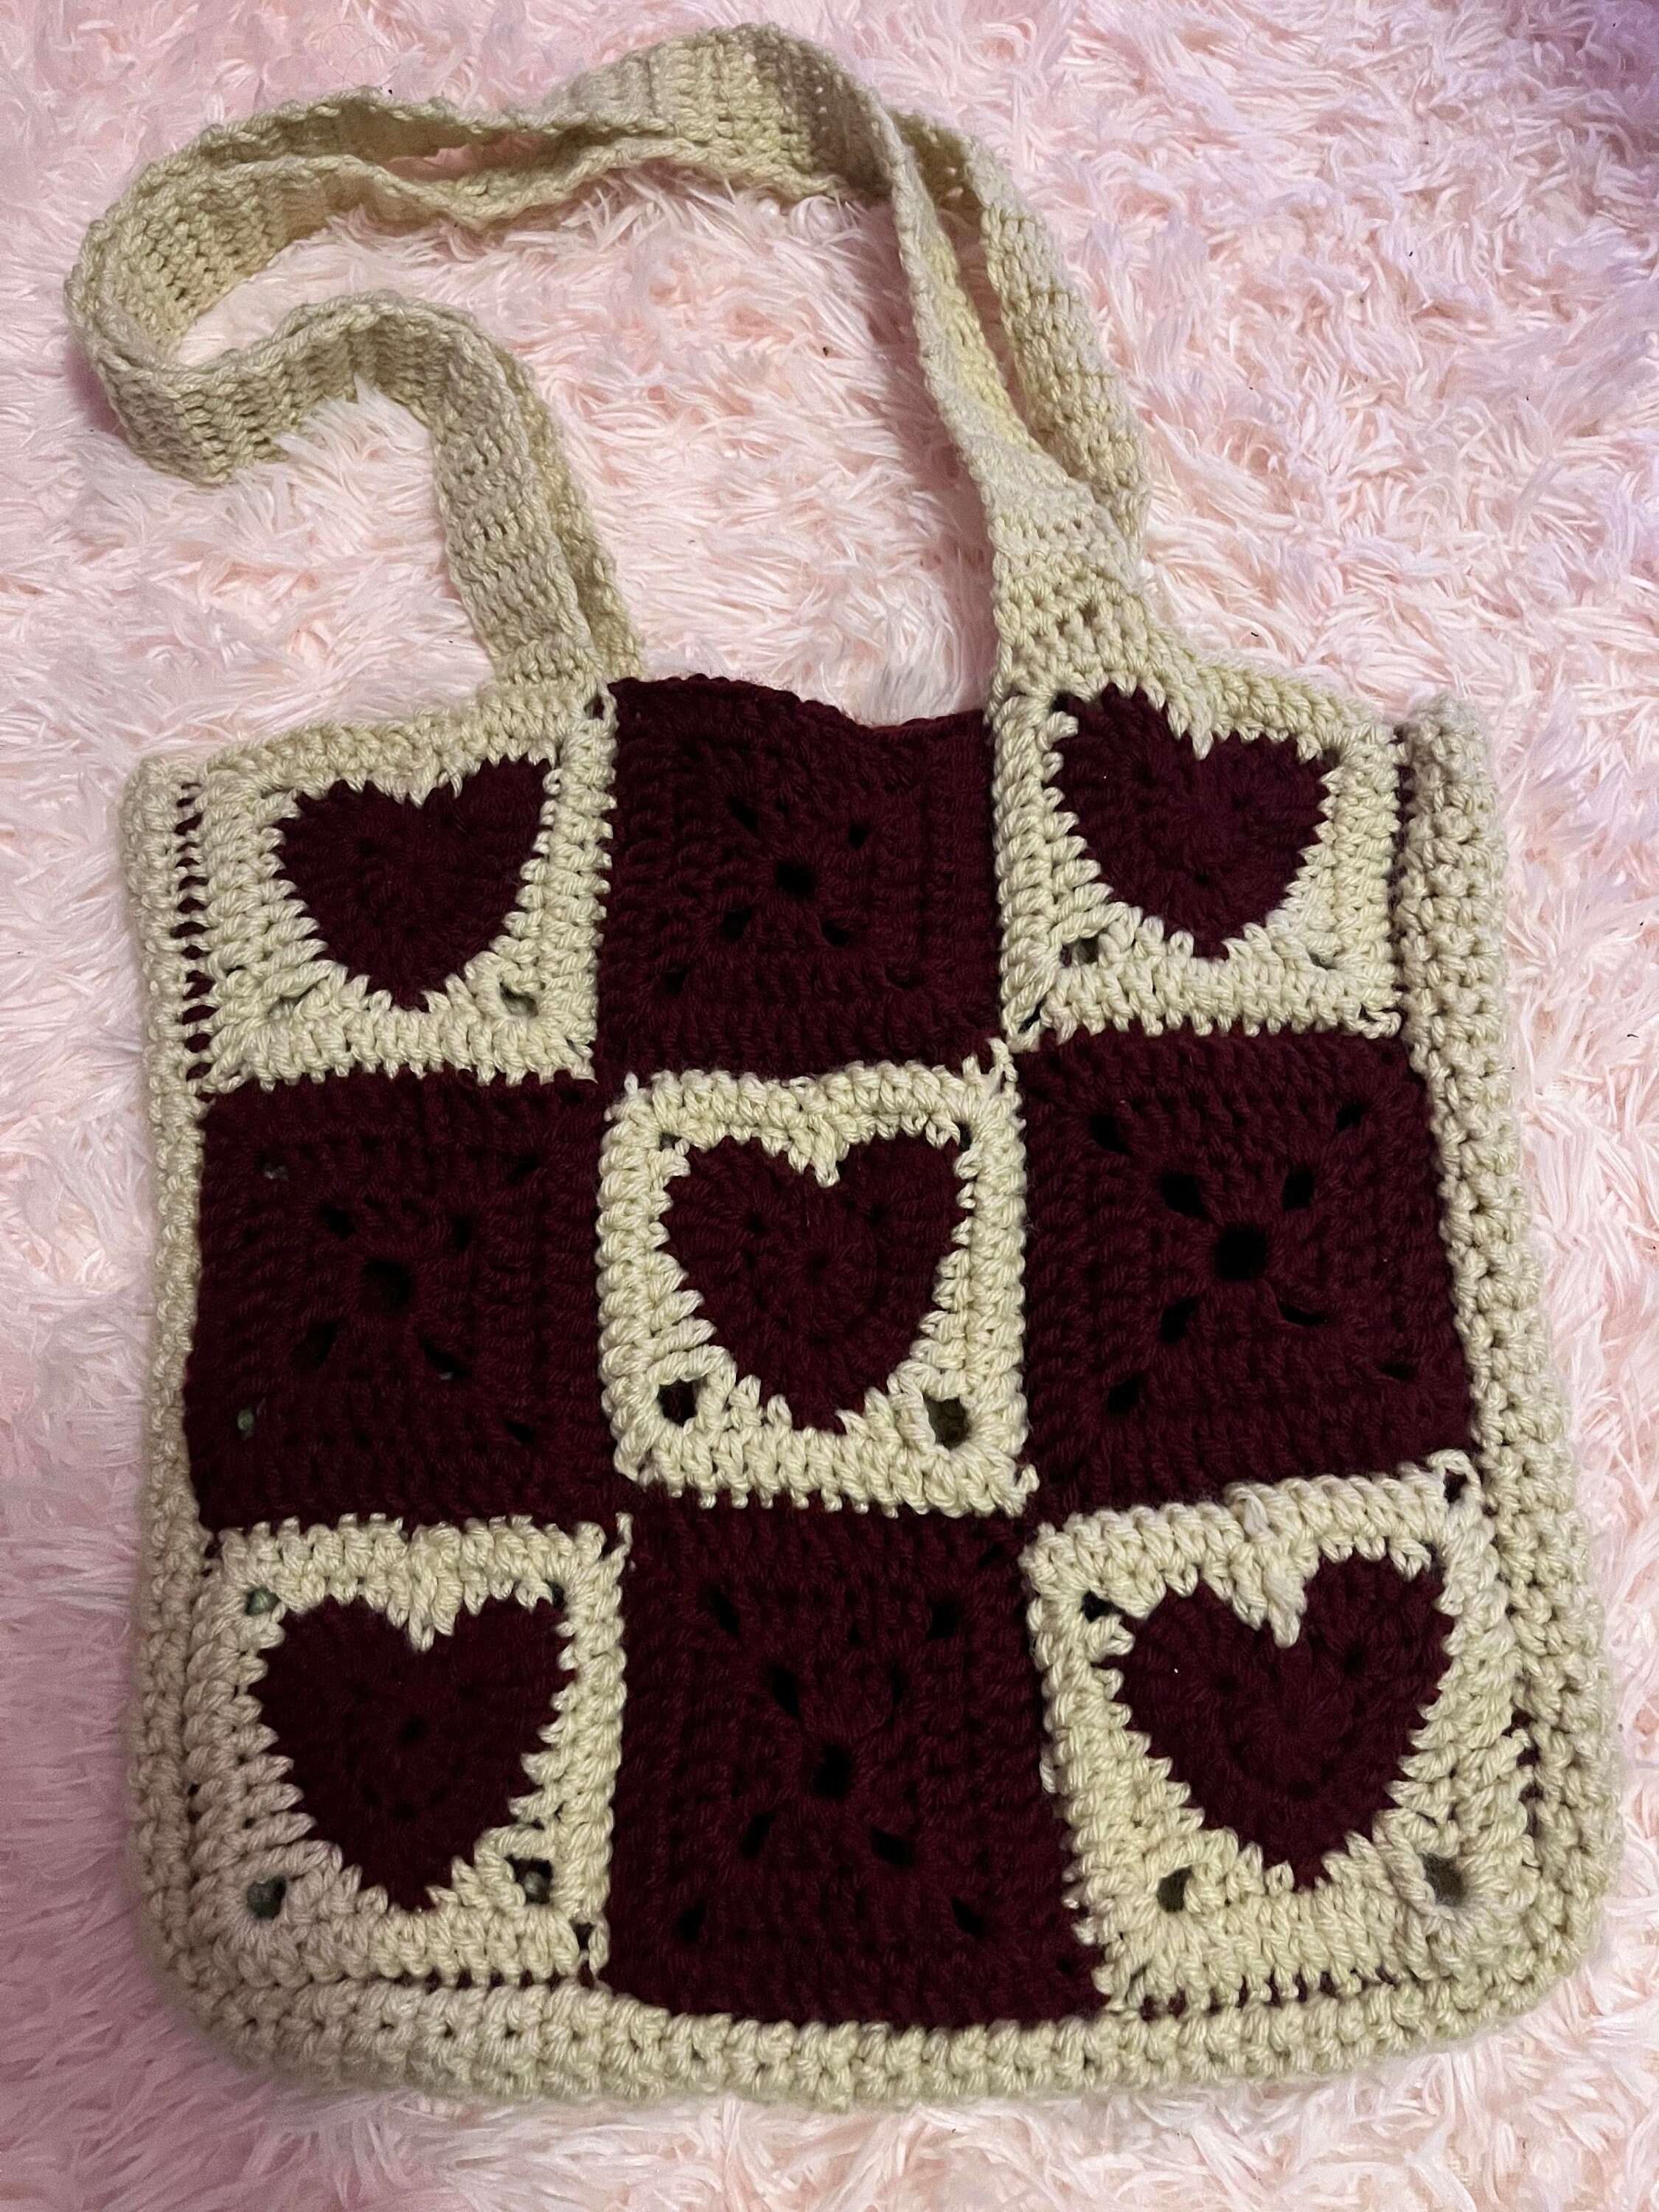 Crochet Heart Bag 🌸💖✨, Gallery posted by krystaleverdeen